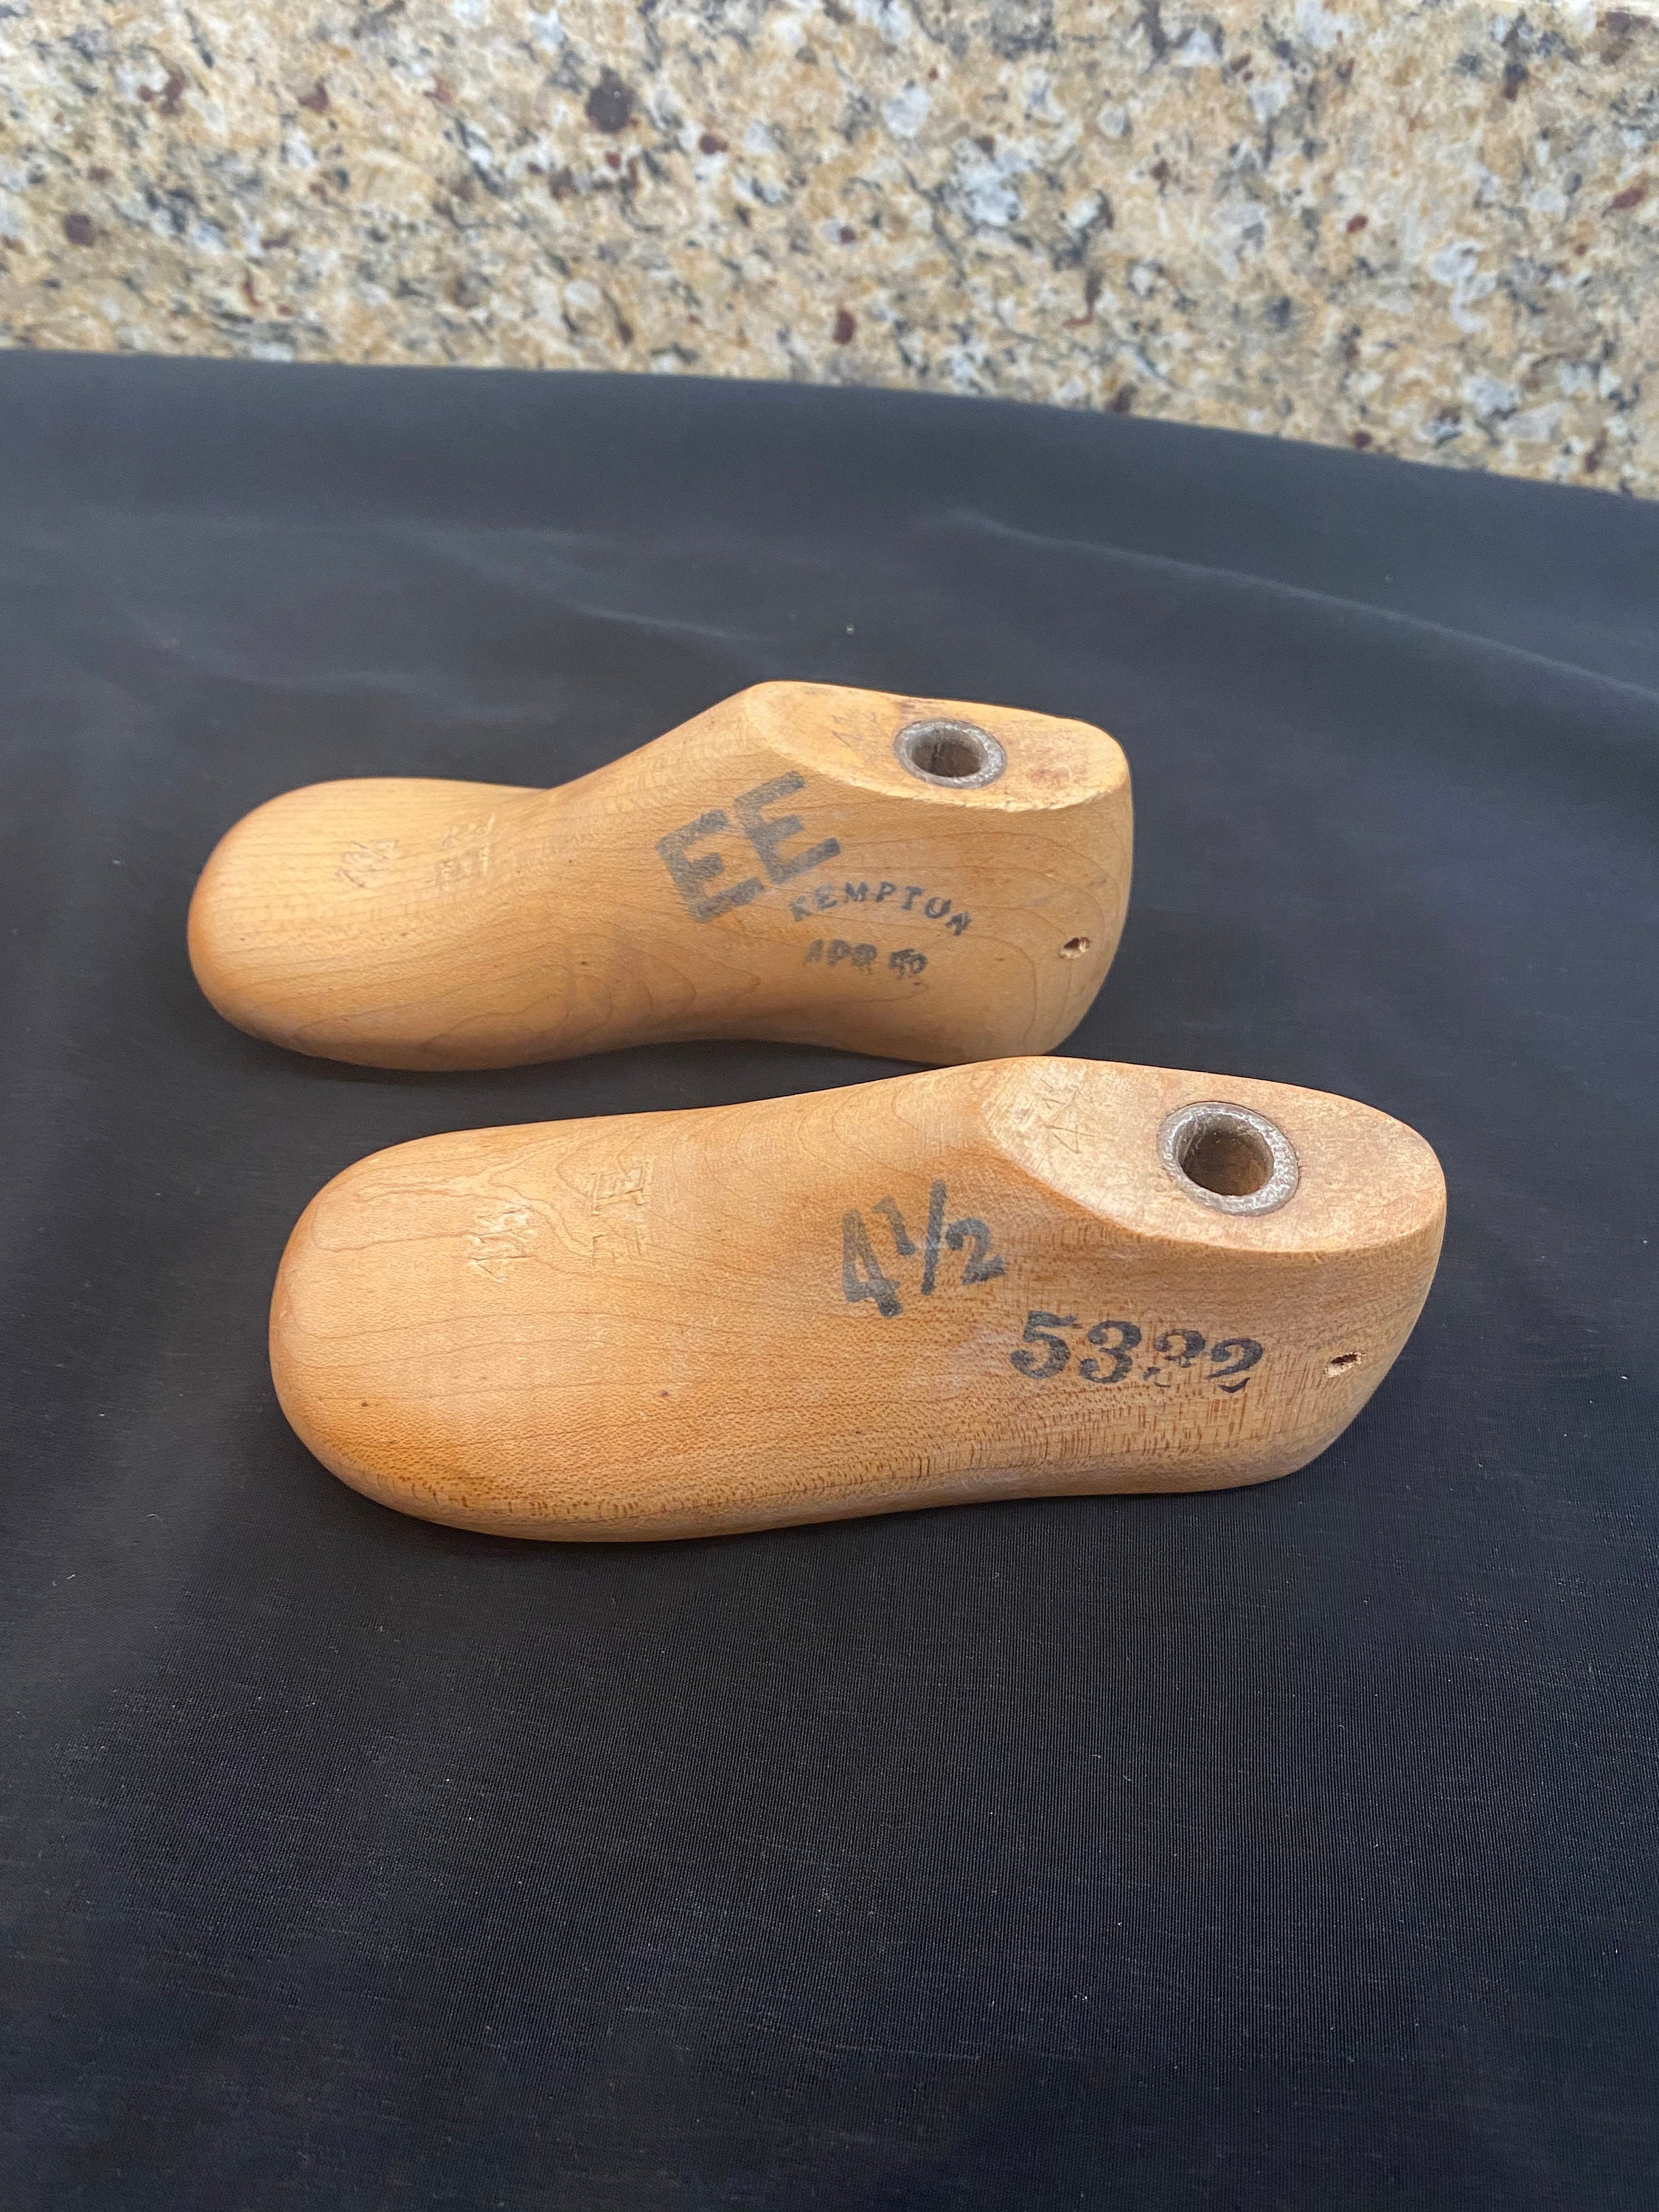 Wooden Cobbler's Shoe Forms - A Pair